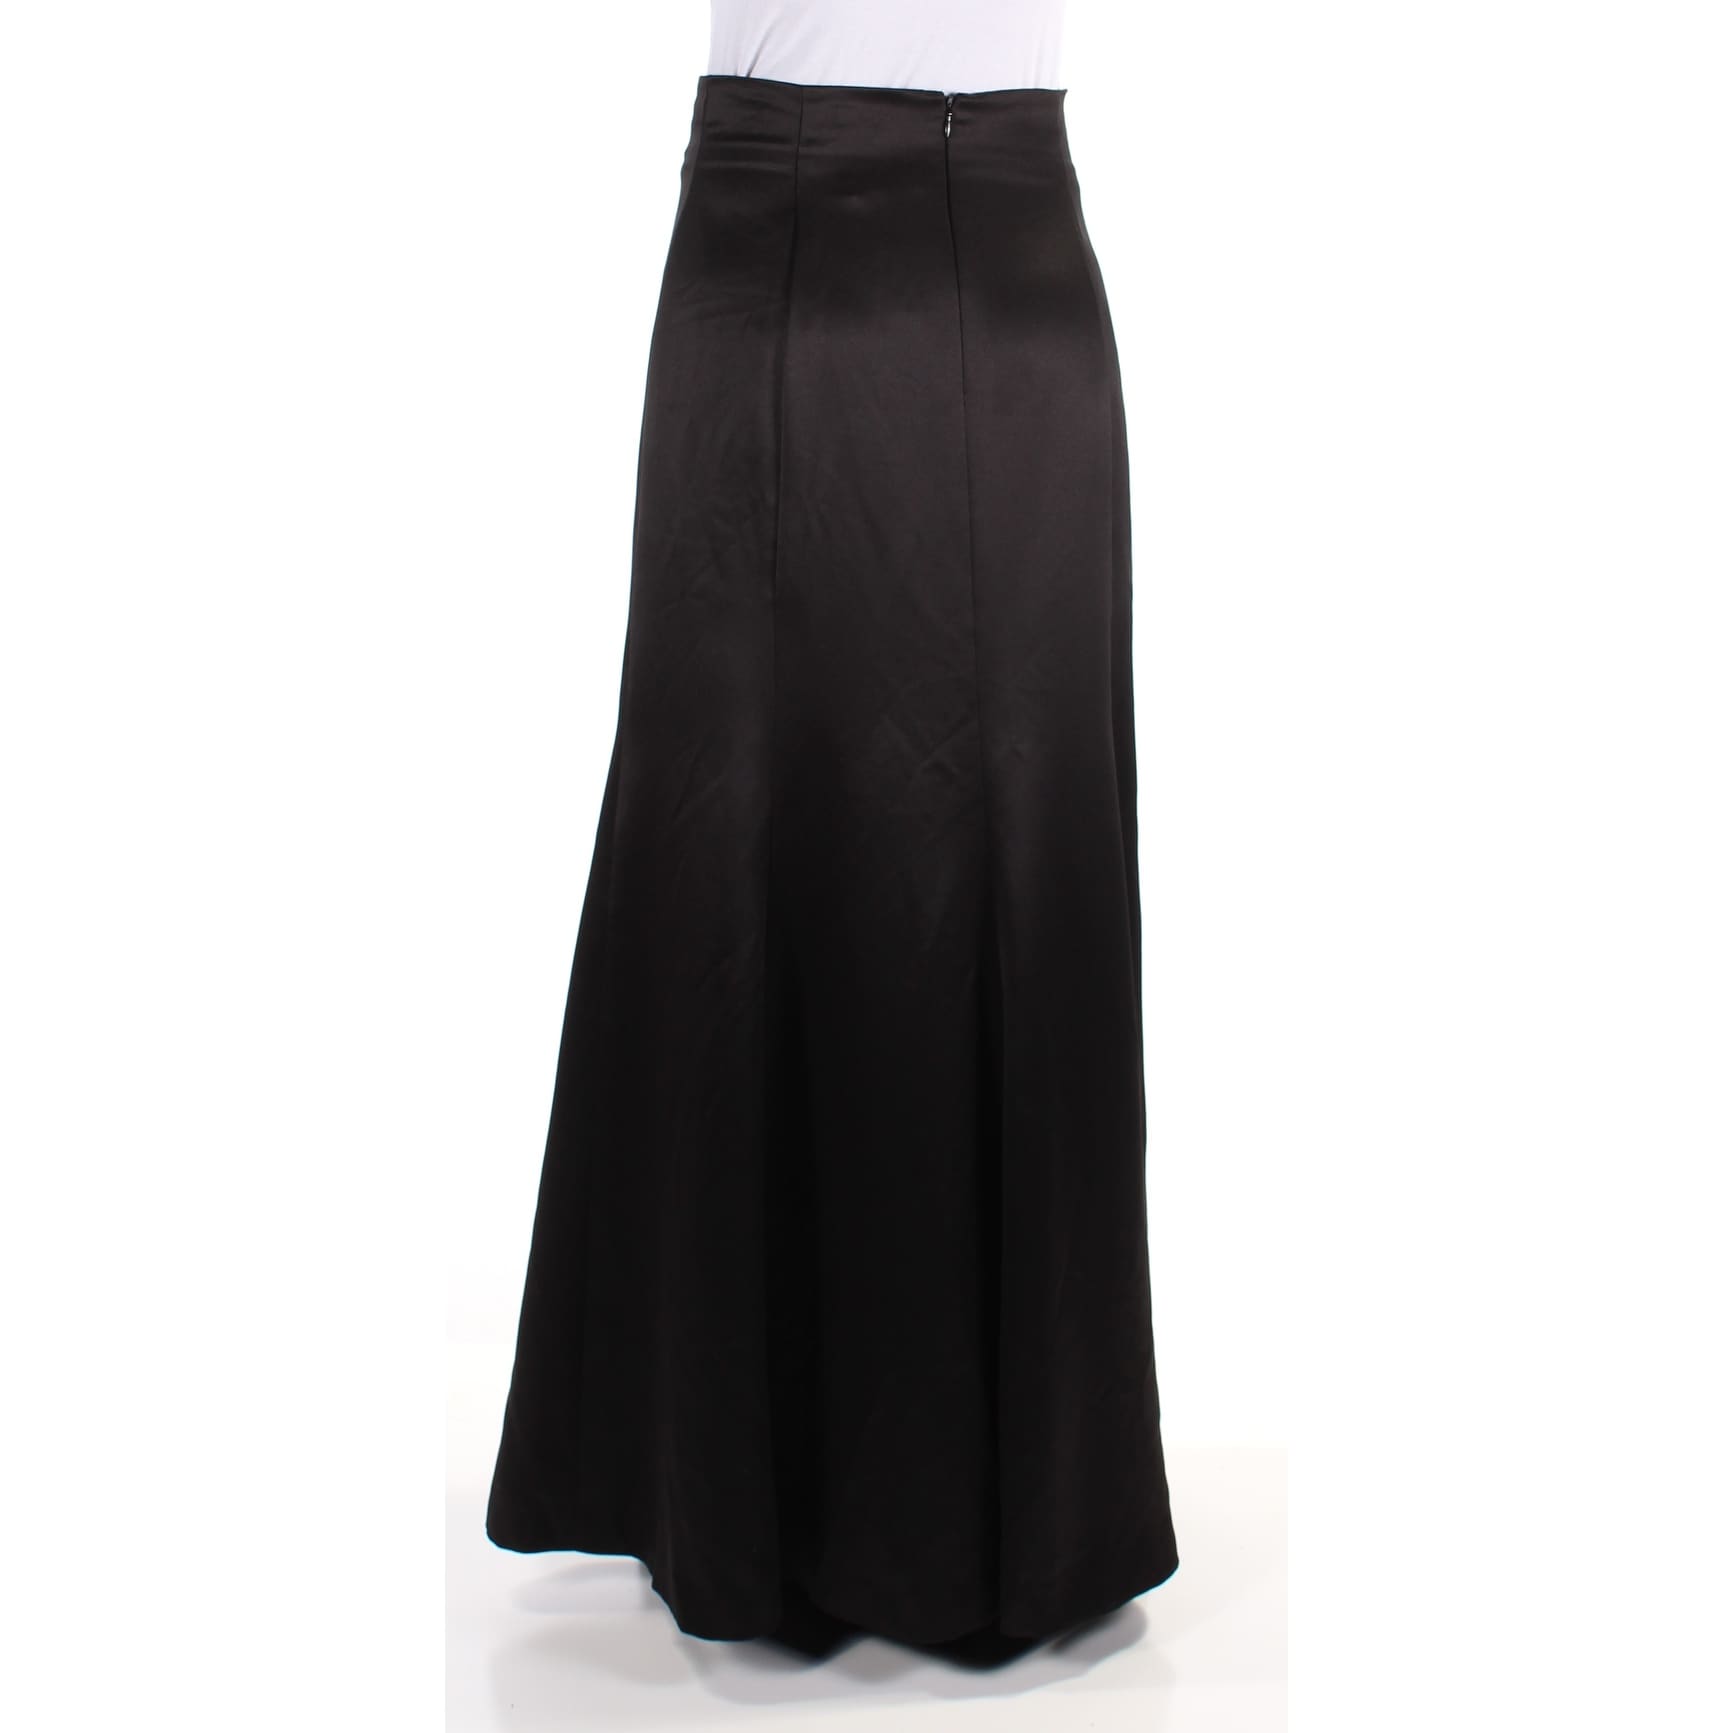 black evening skirts full length